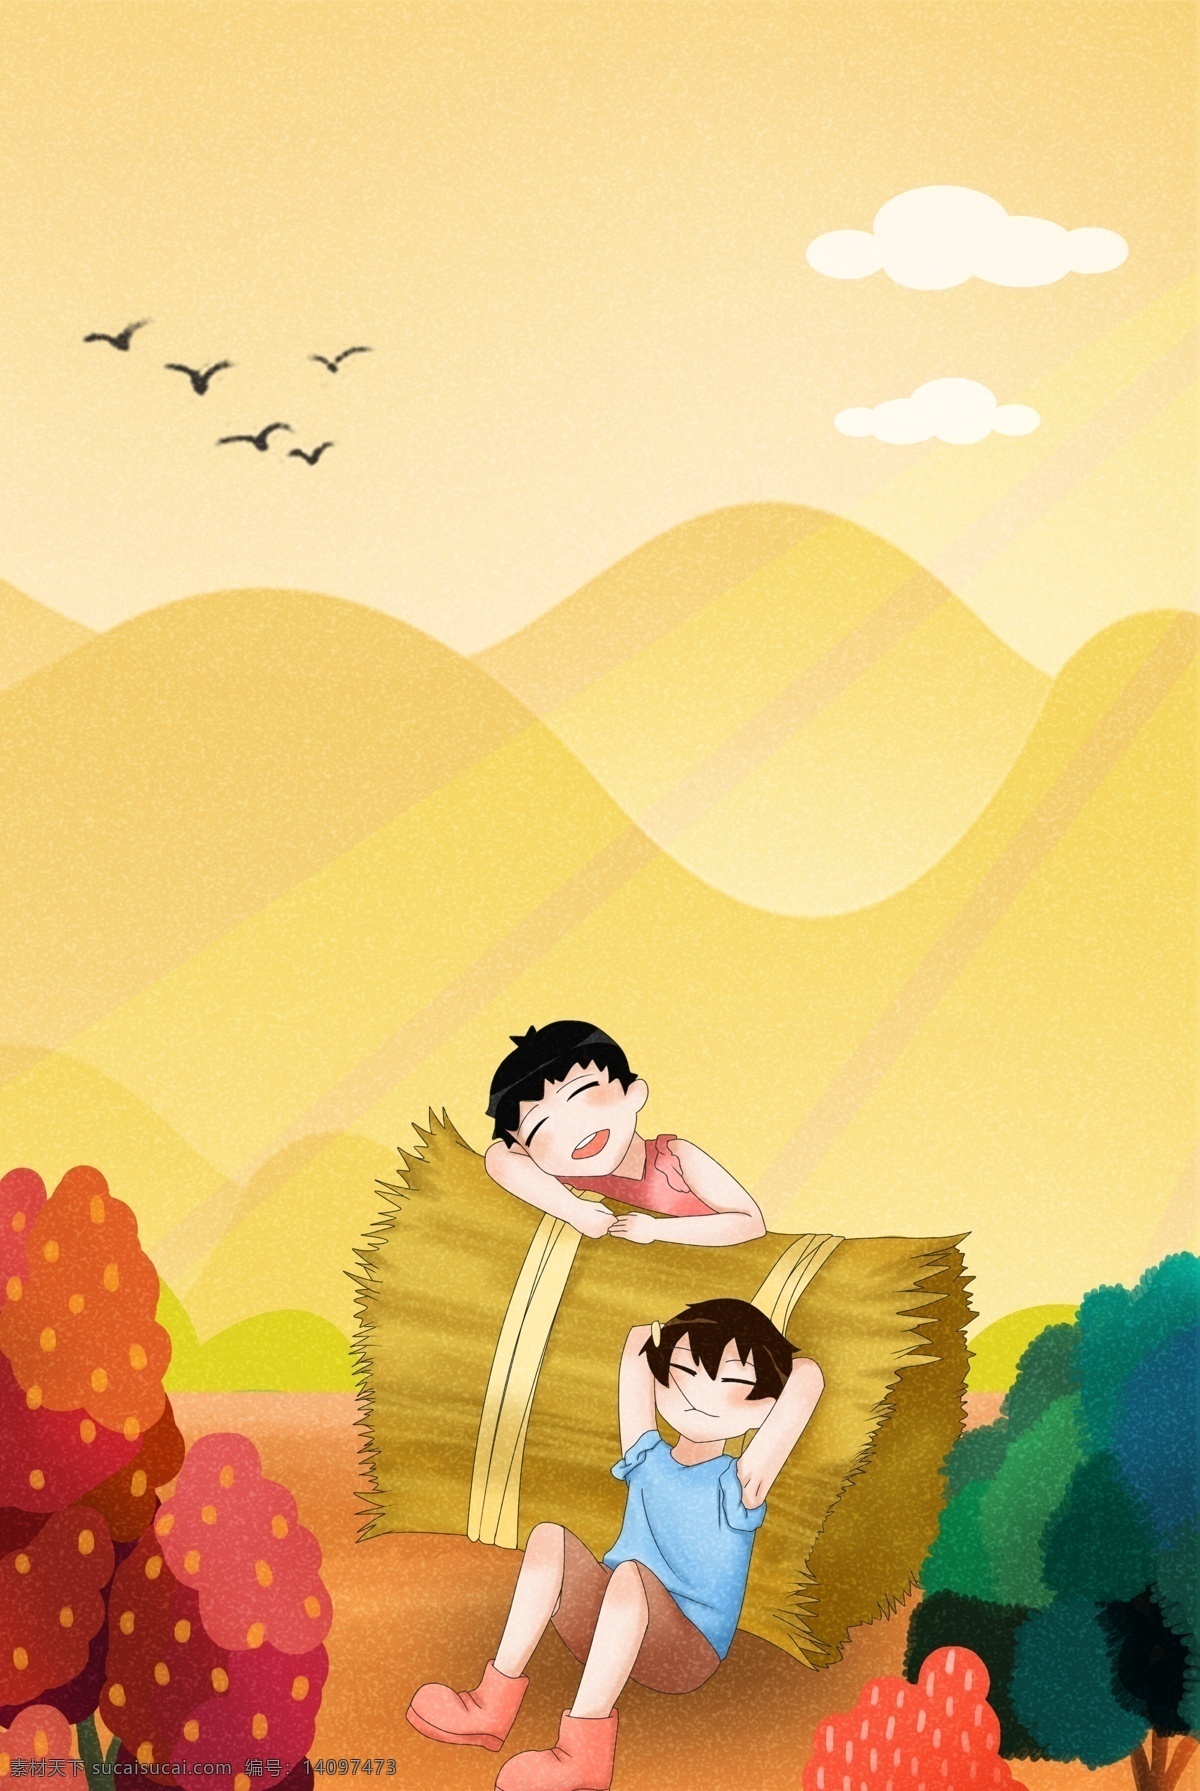 九月 你好 黄色 秋天 背景 海报 九月你好 简约 卡通 文艺 中国风 落叶 树木 元素 儿童